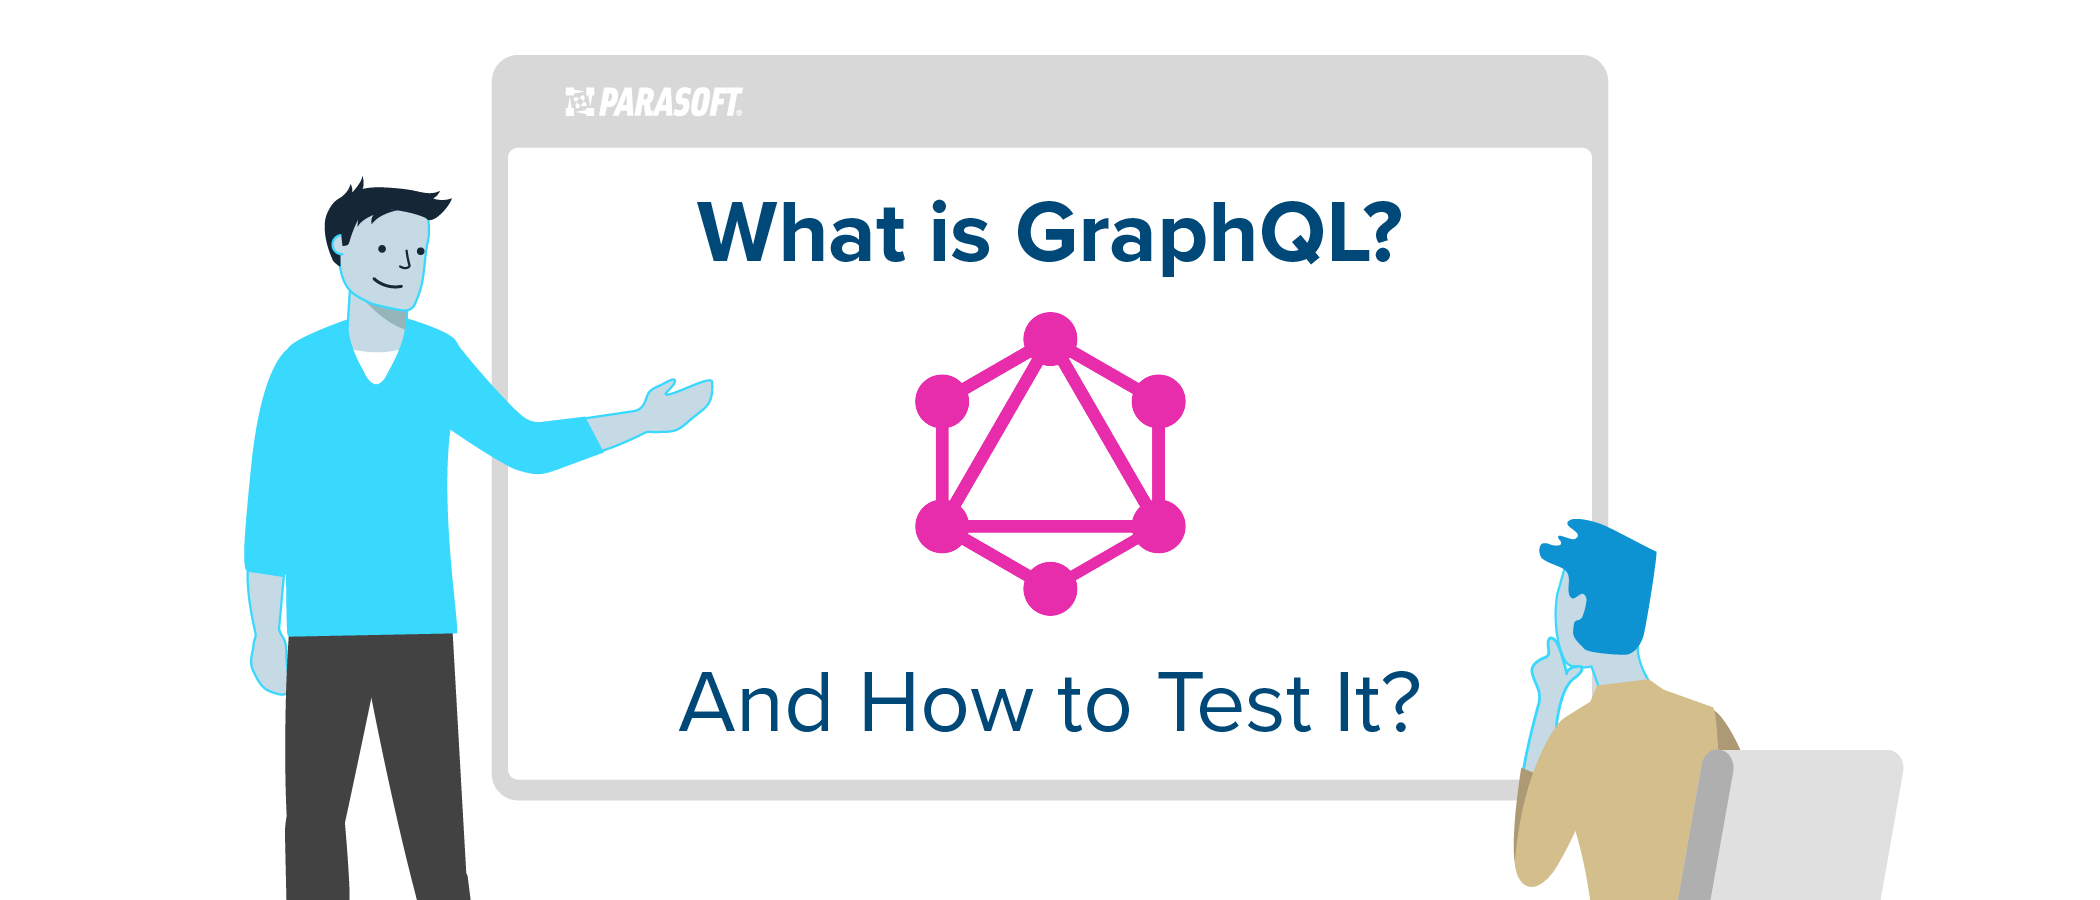 ¿Qué es GraphQL y cómo probarlo?